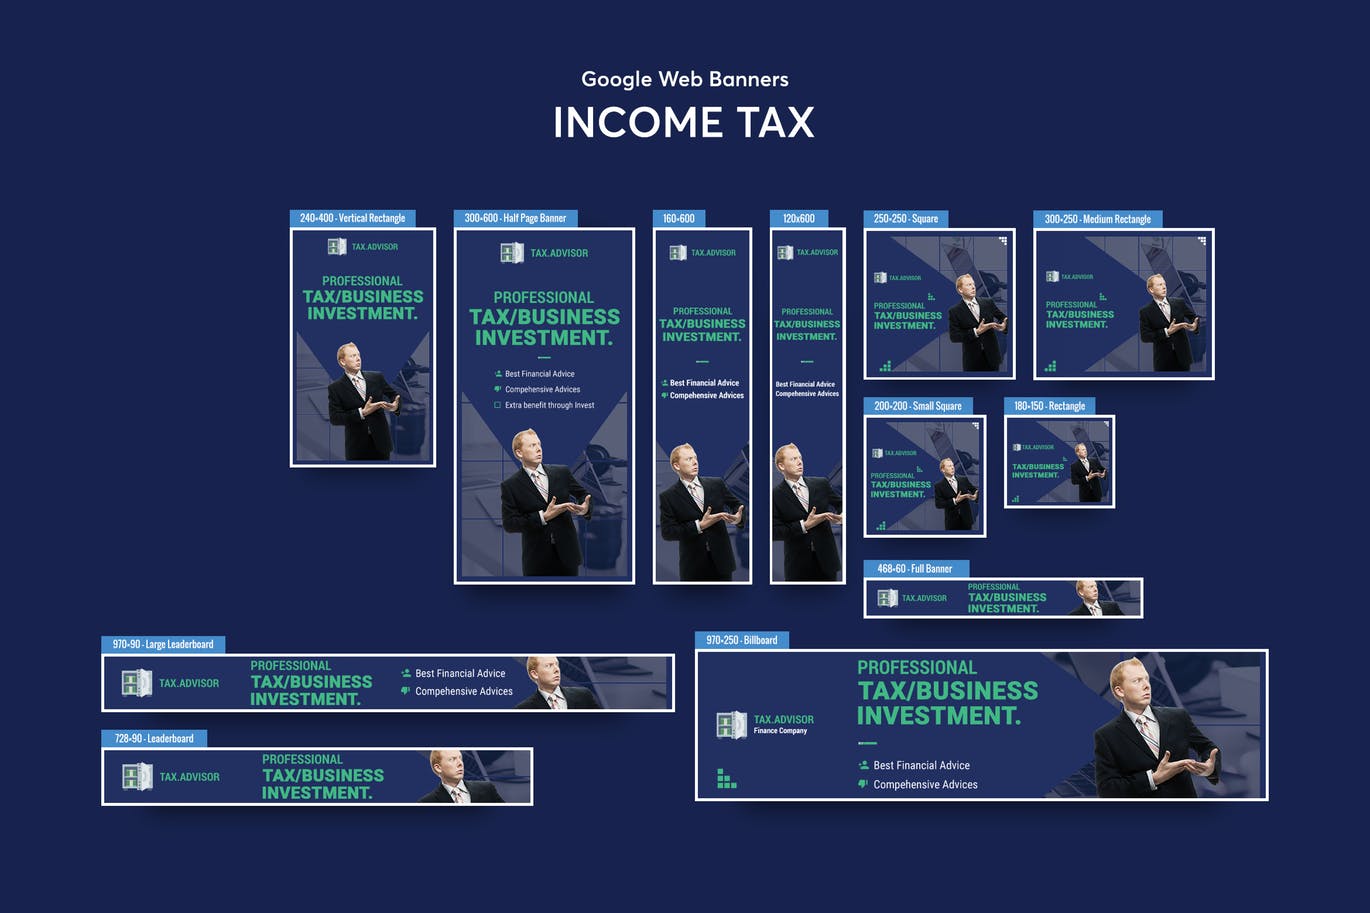 代理记账公司百度谷歌横幅第一素材精选广告模板 Income Tax Banners Ad插图